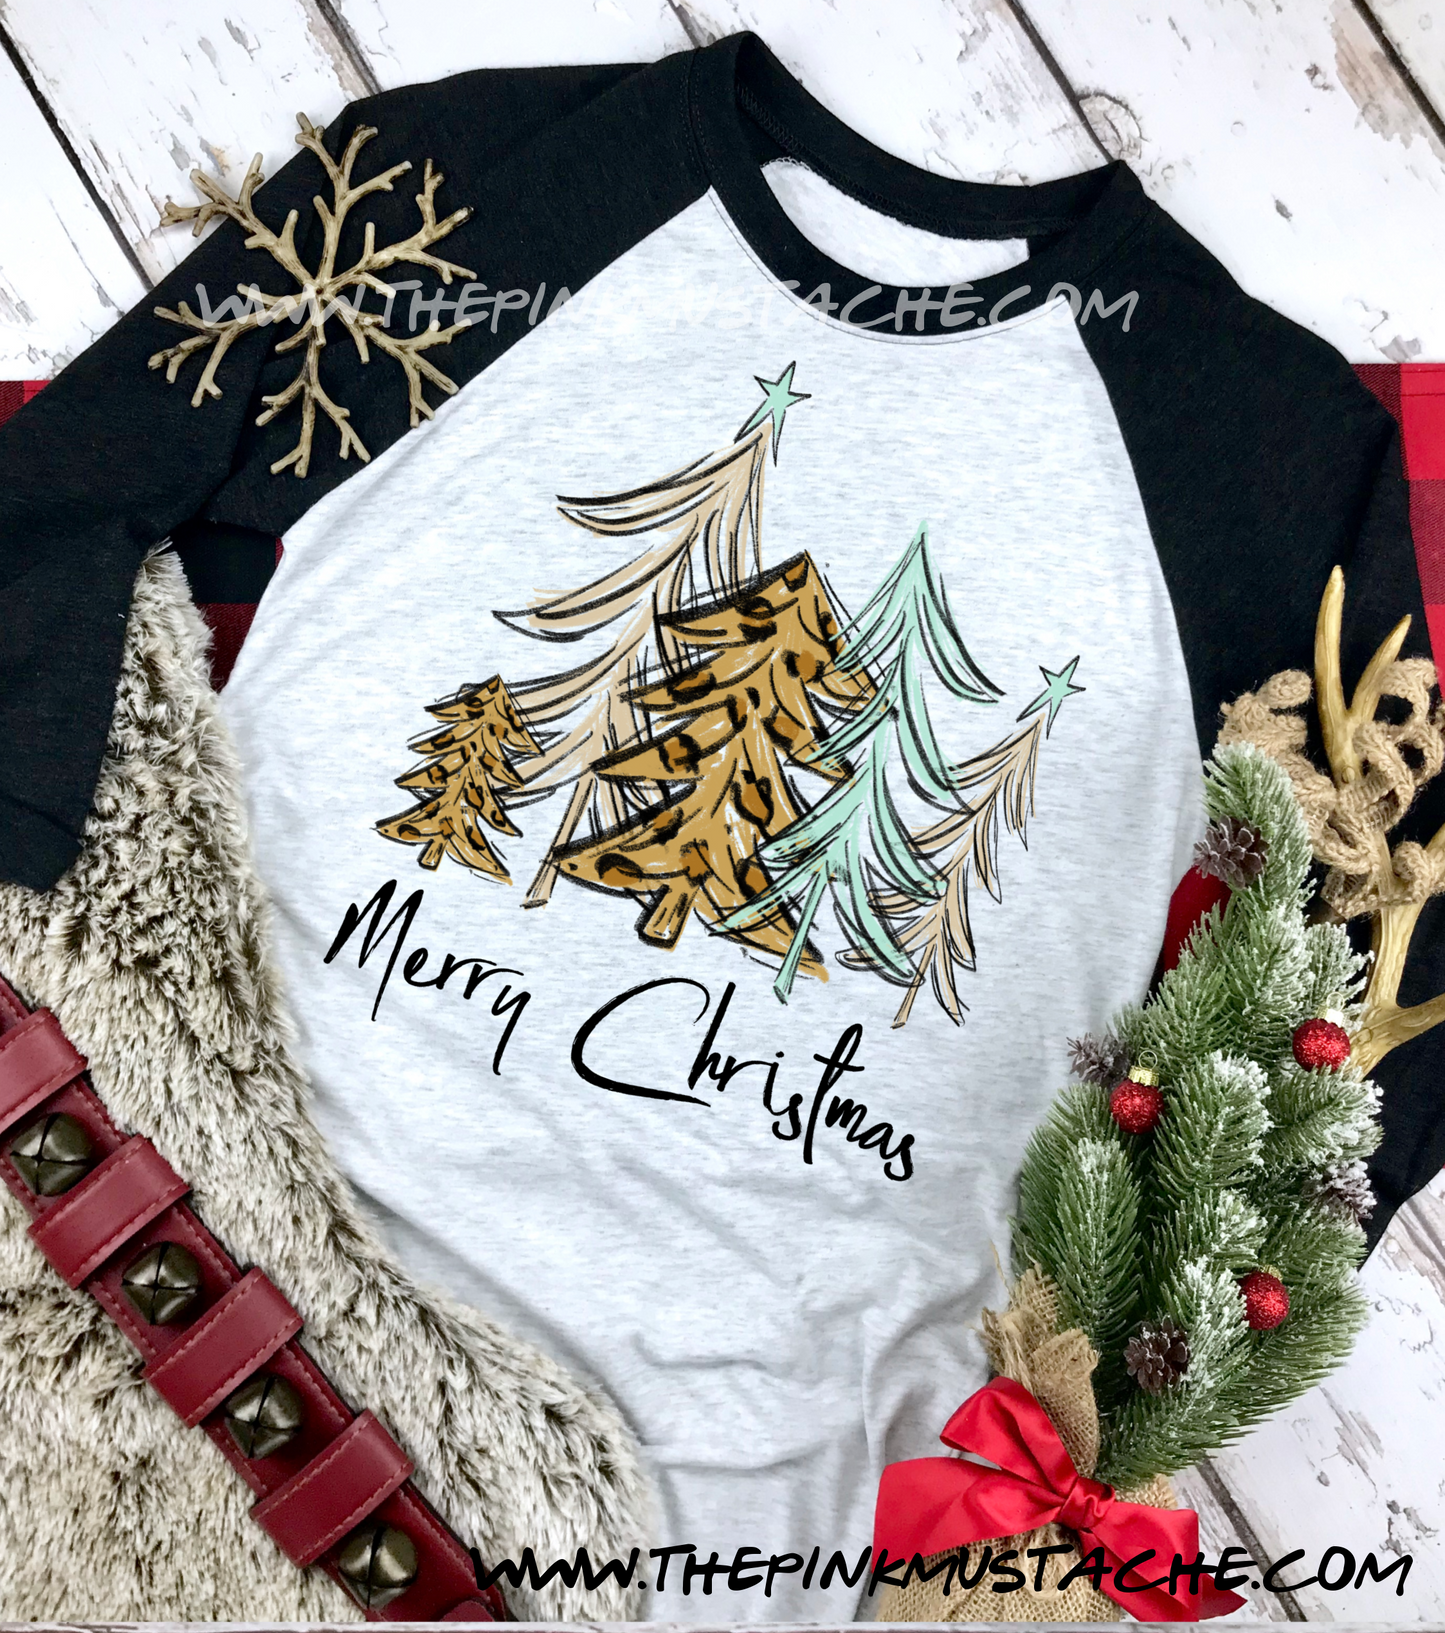 Merry Christmas Tree Print  Raglan / Youth and Adult sizing / Christmas T-Shirt